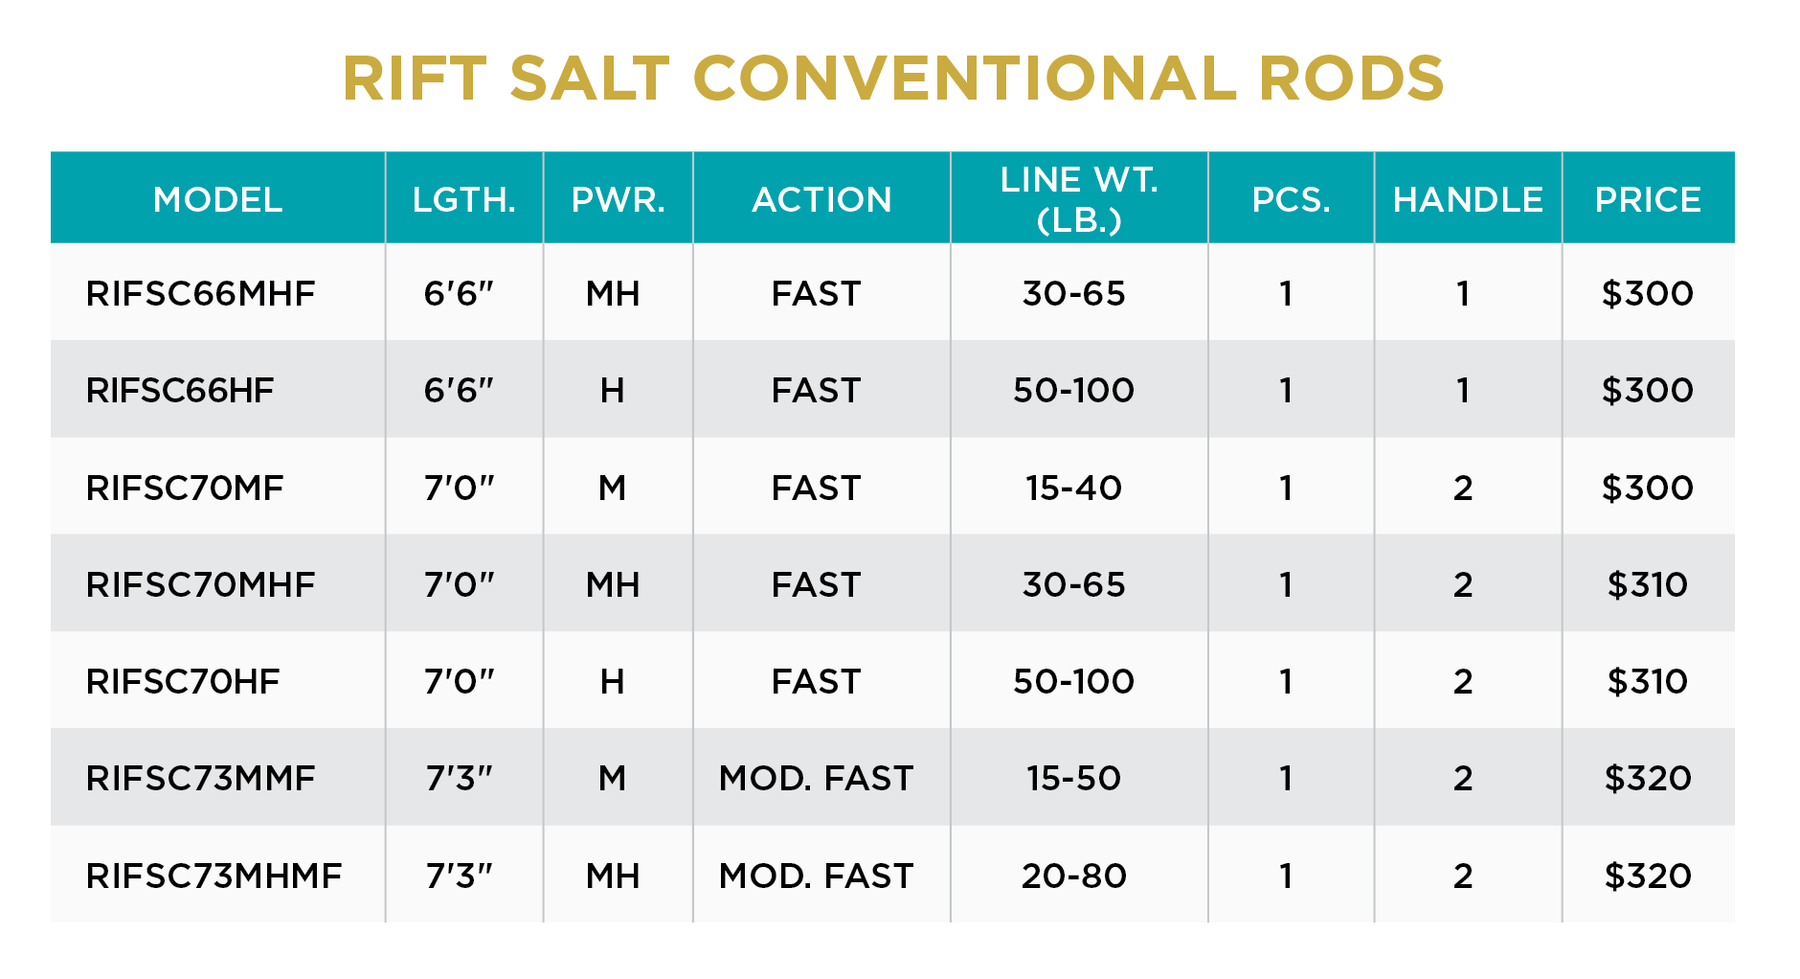 RIFT SALT CONVENTIONAL